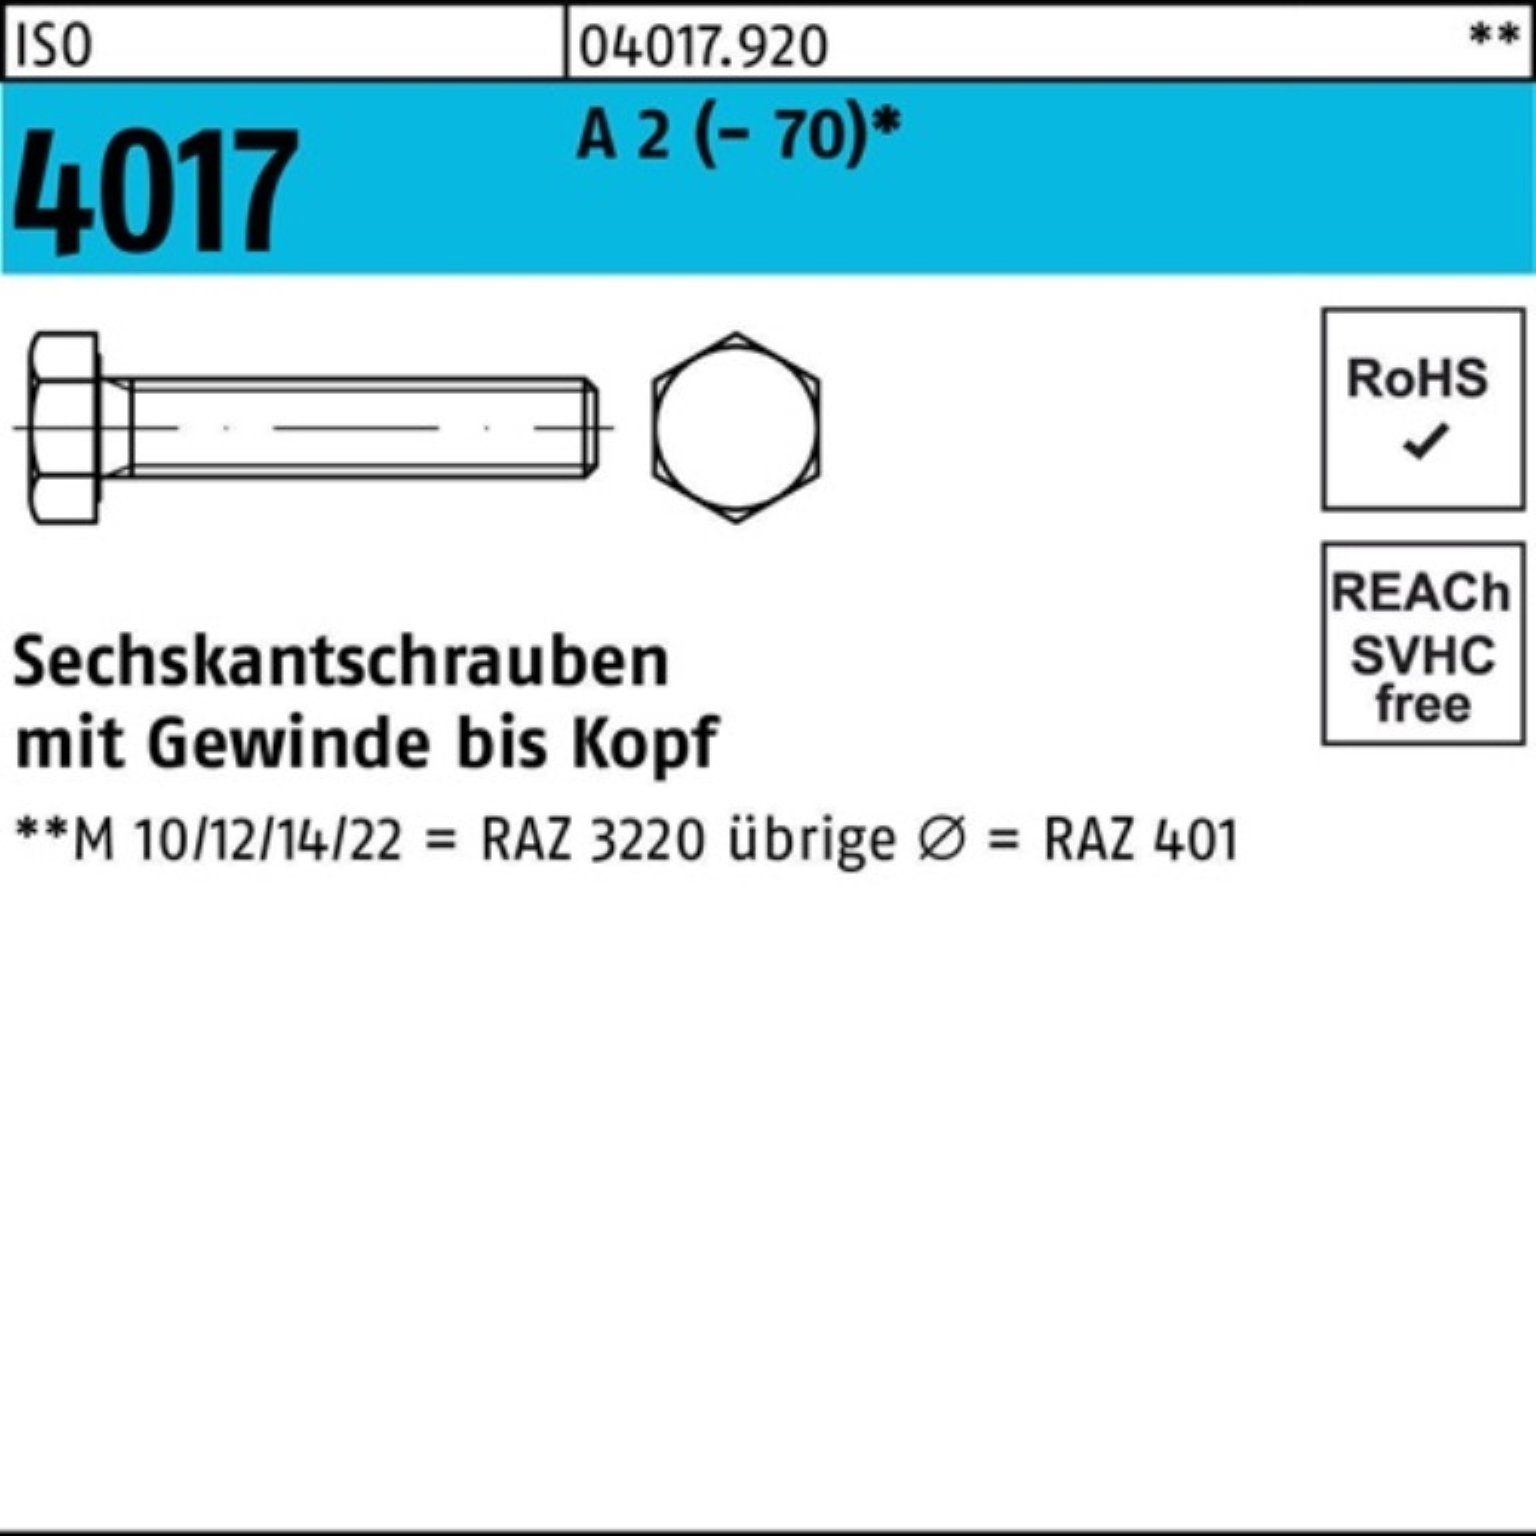 Bufab Sechskantschraube 100er Pack Sechskantschraube ISO 4017 VG M14x 65 A 2 (70) 50 Stück